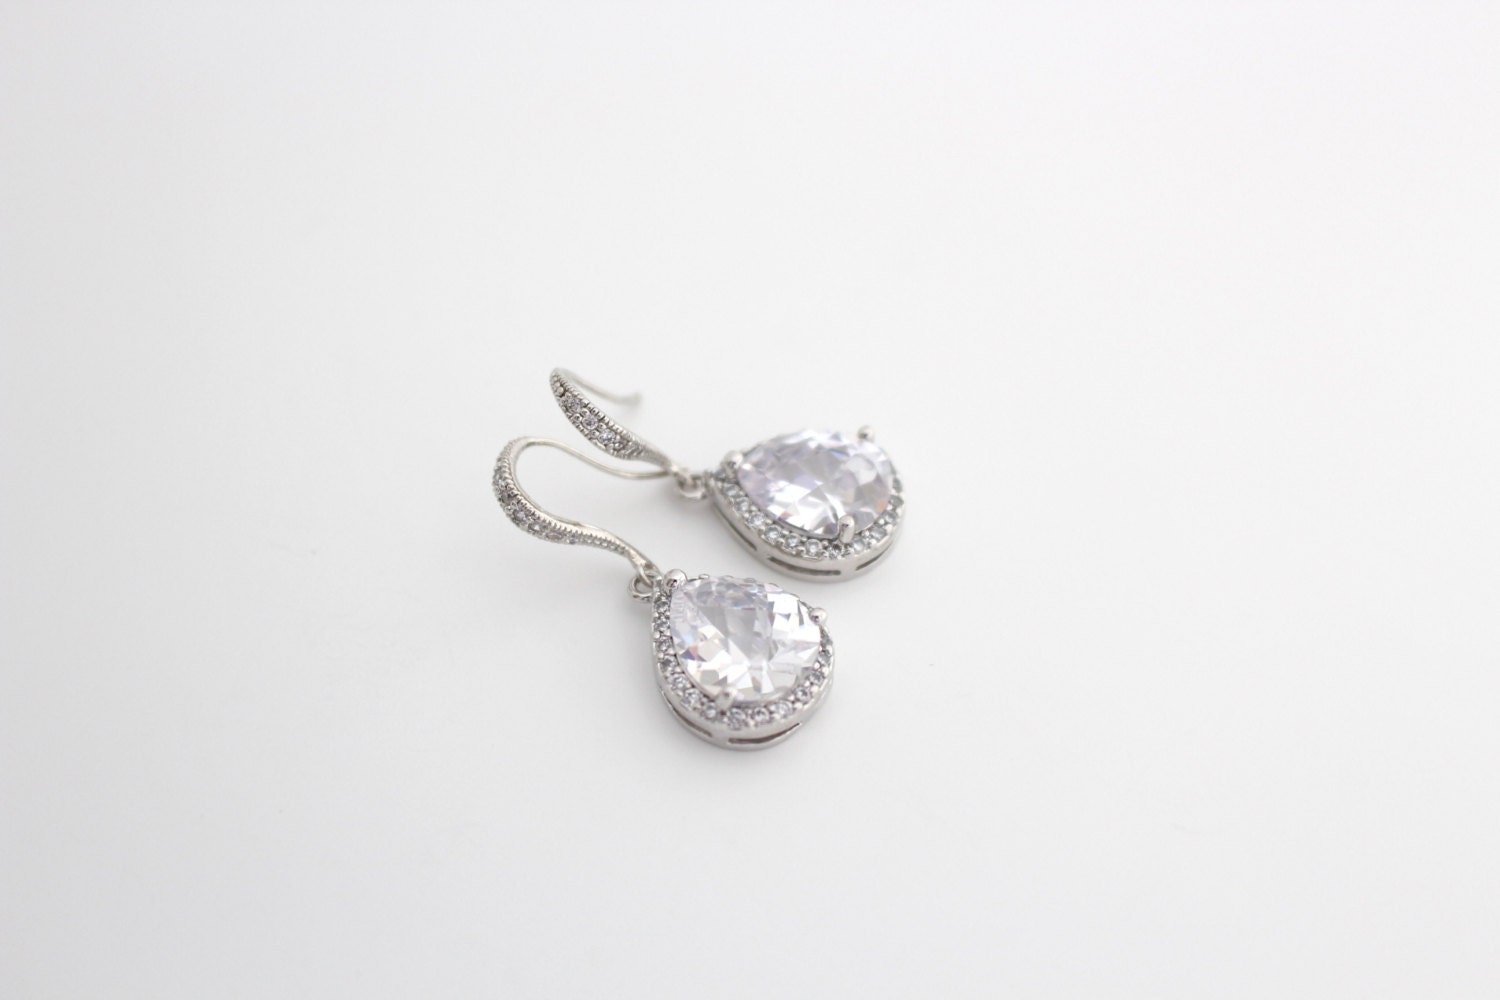 Cubic Zirconia Earrings Wedding Teardrop Earrings Statement | Etsy